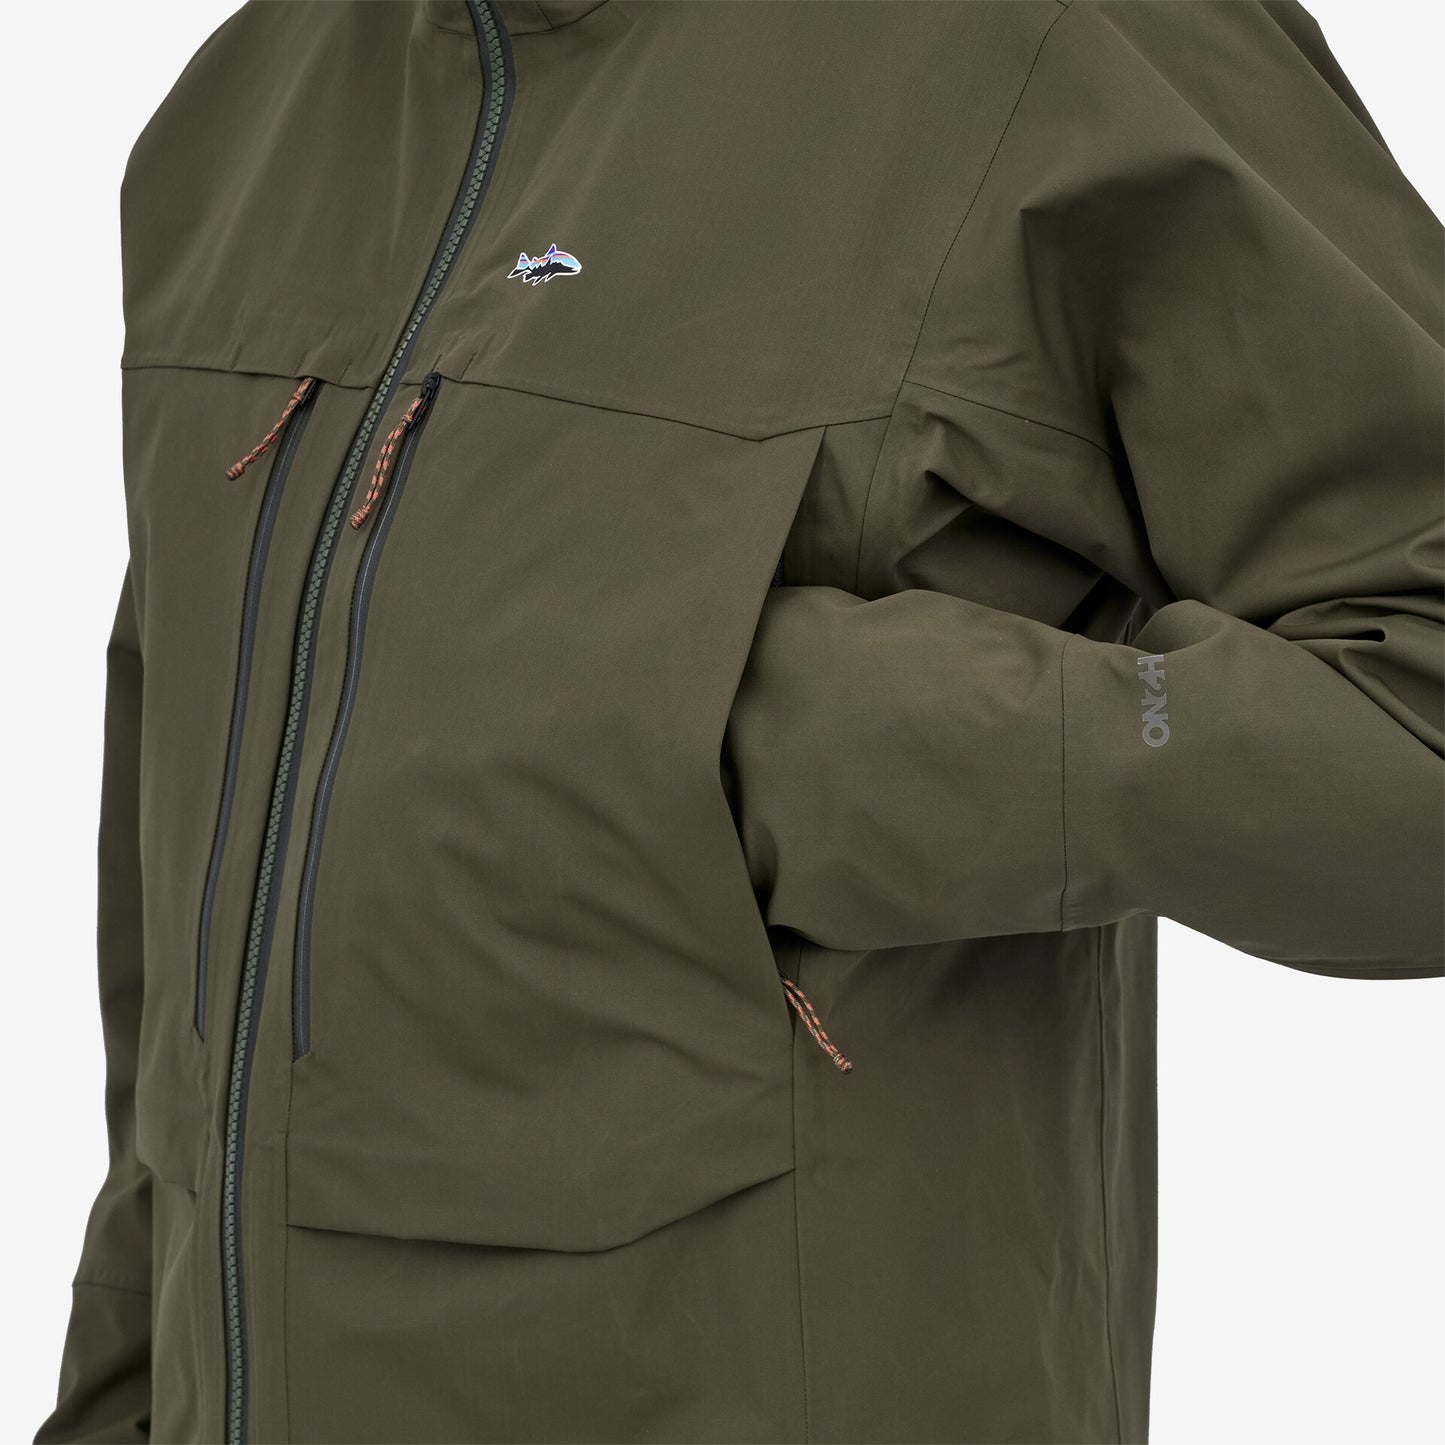 Vöðlujakki - Patagonia Men's Swiftcurrent™ Wading Jacket